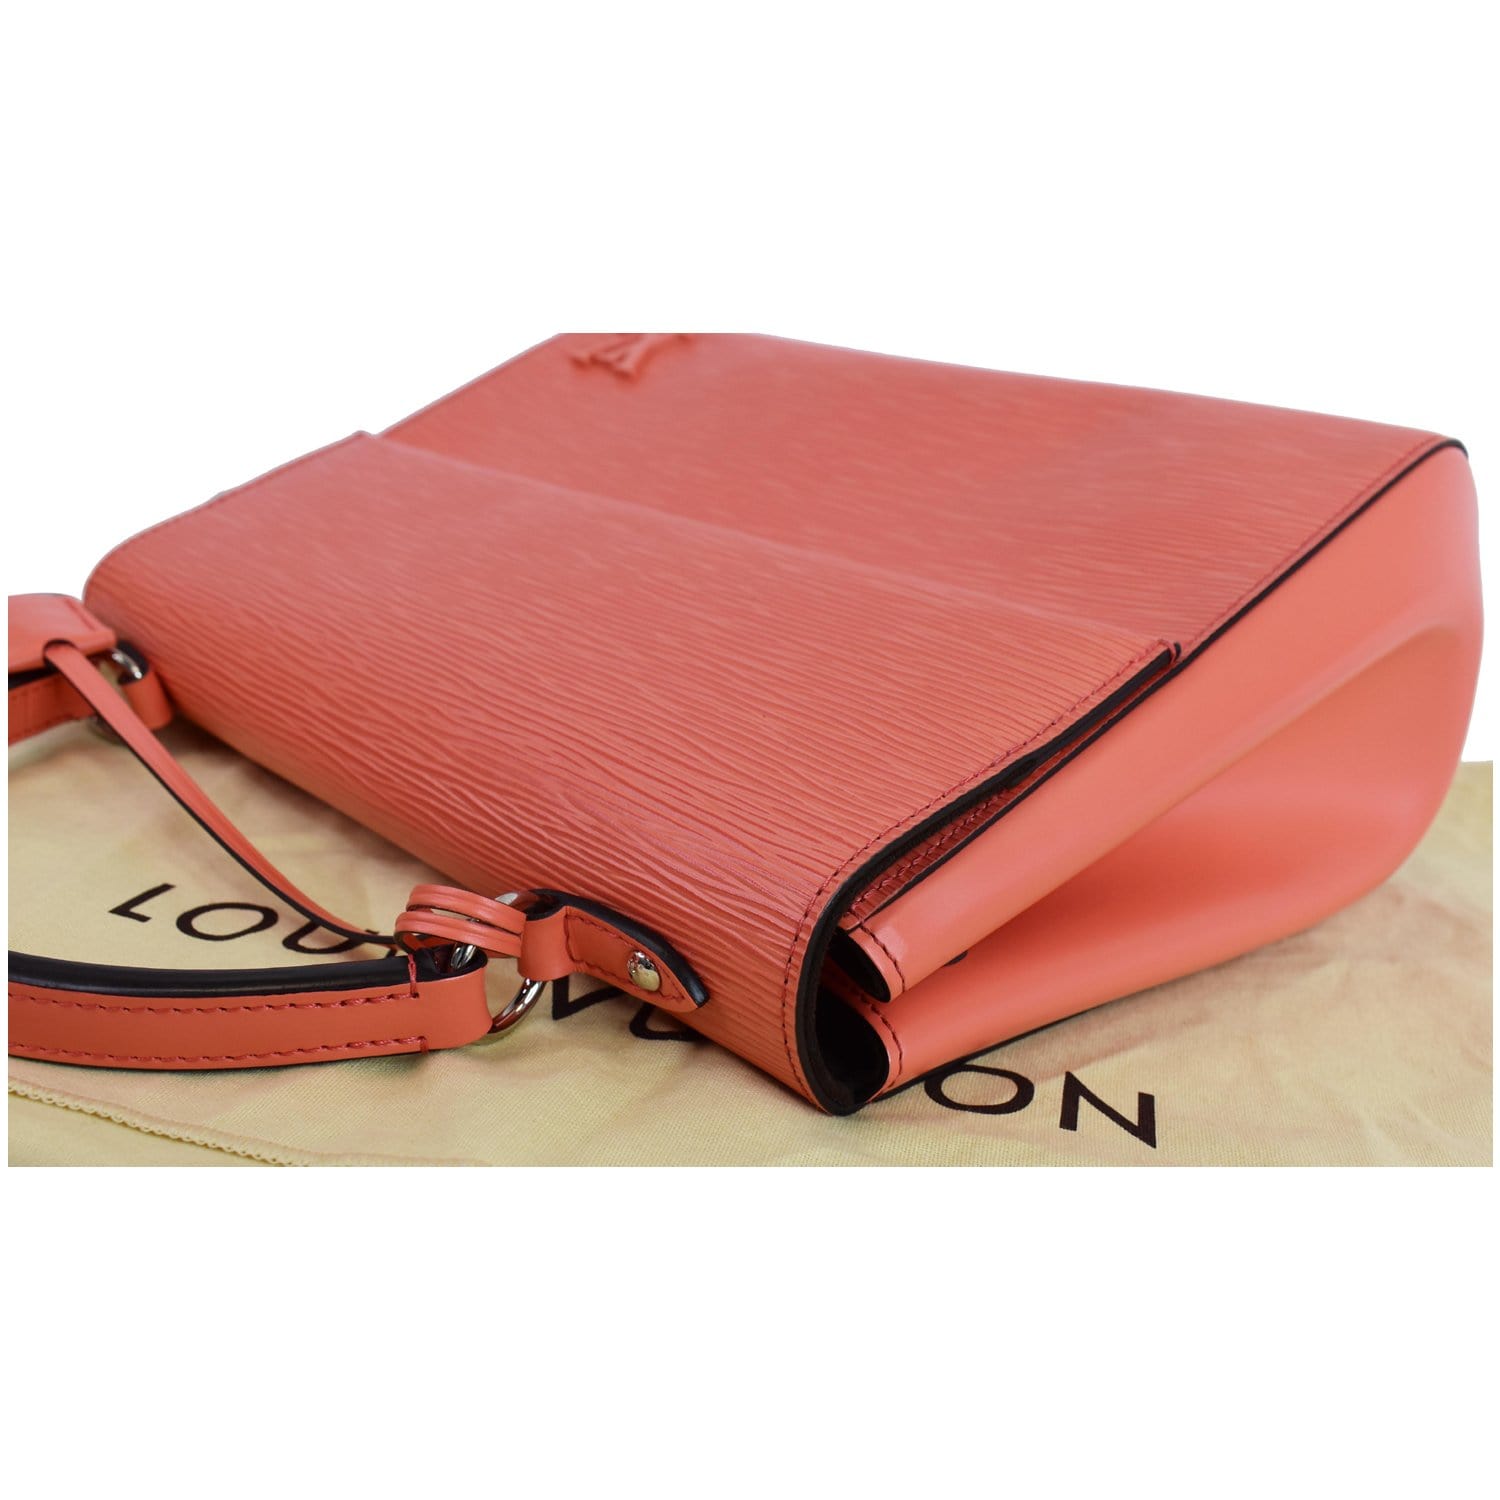 Louis Vuitton Louis Vuitton Cluny Red Epi Leather Shoulder Bag